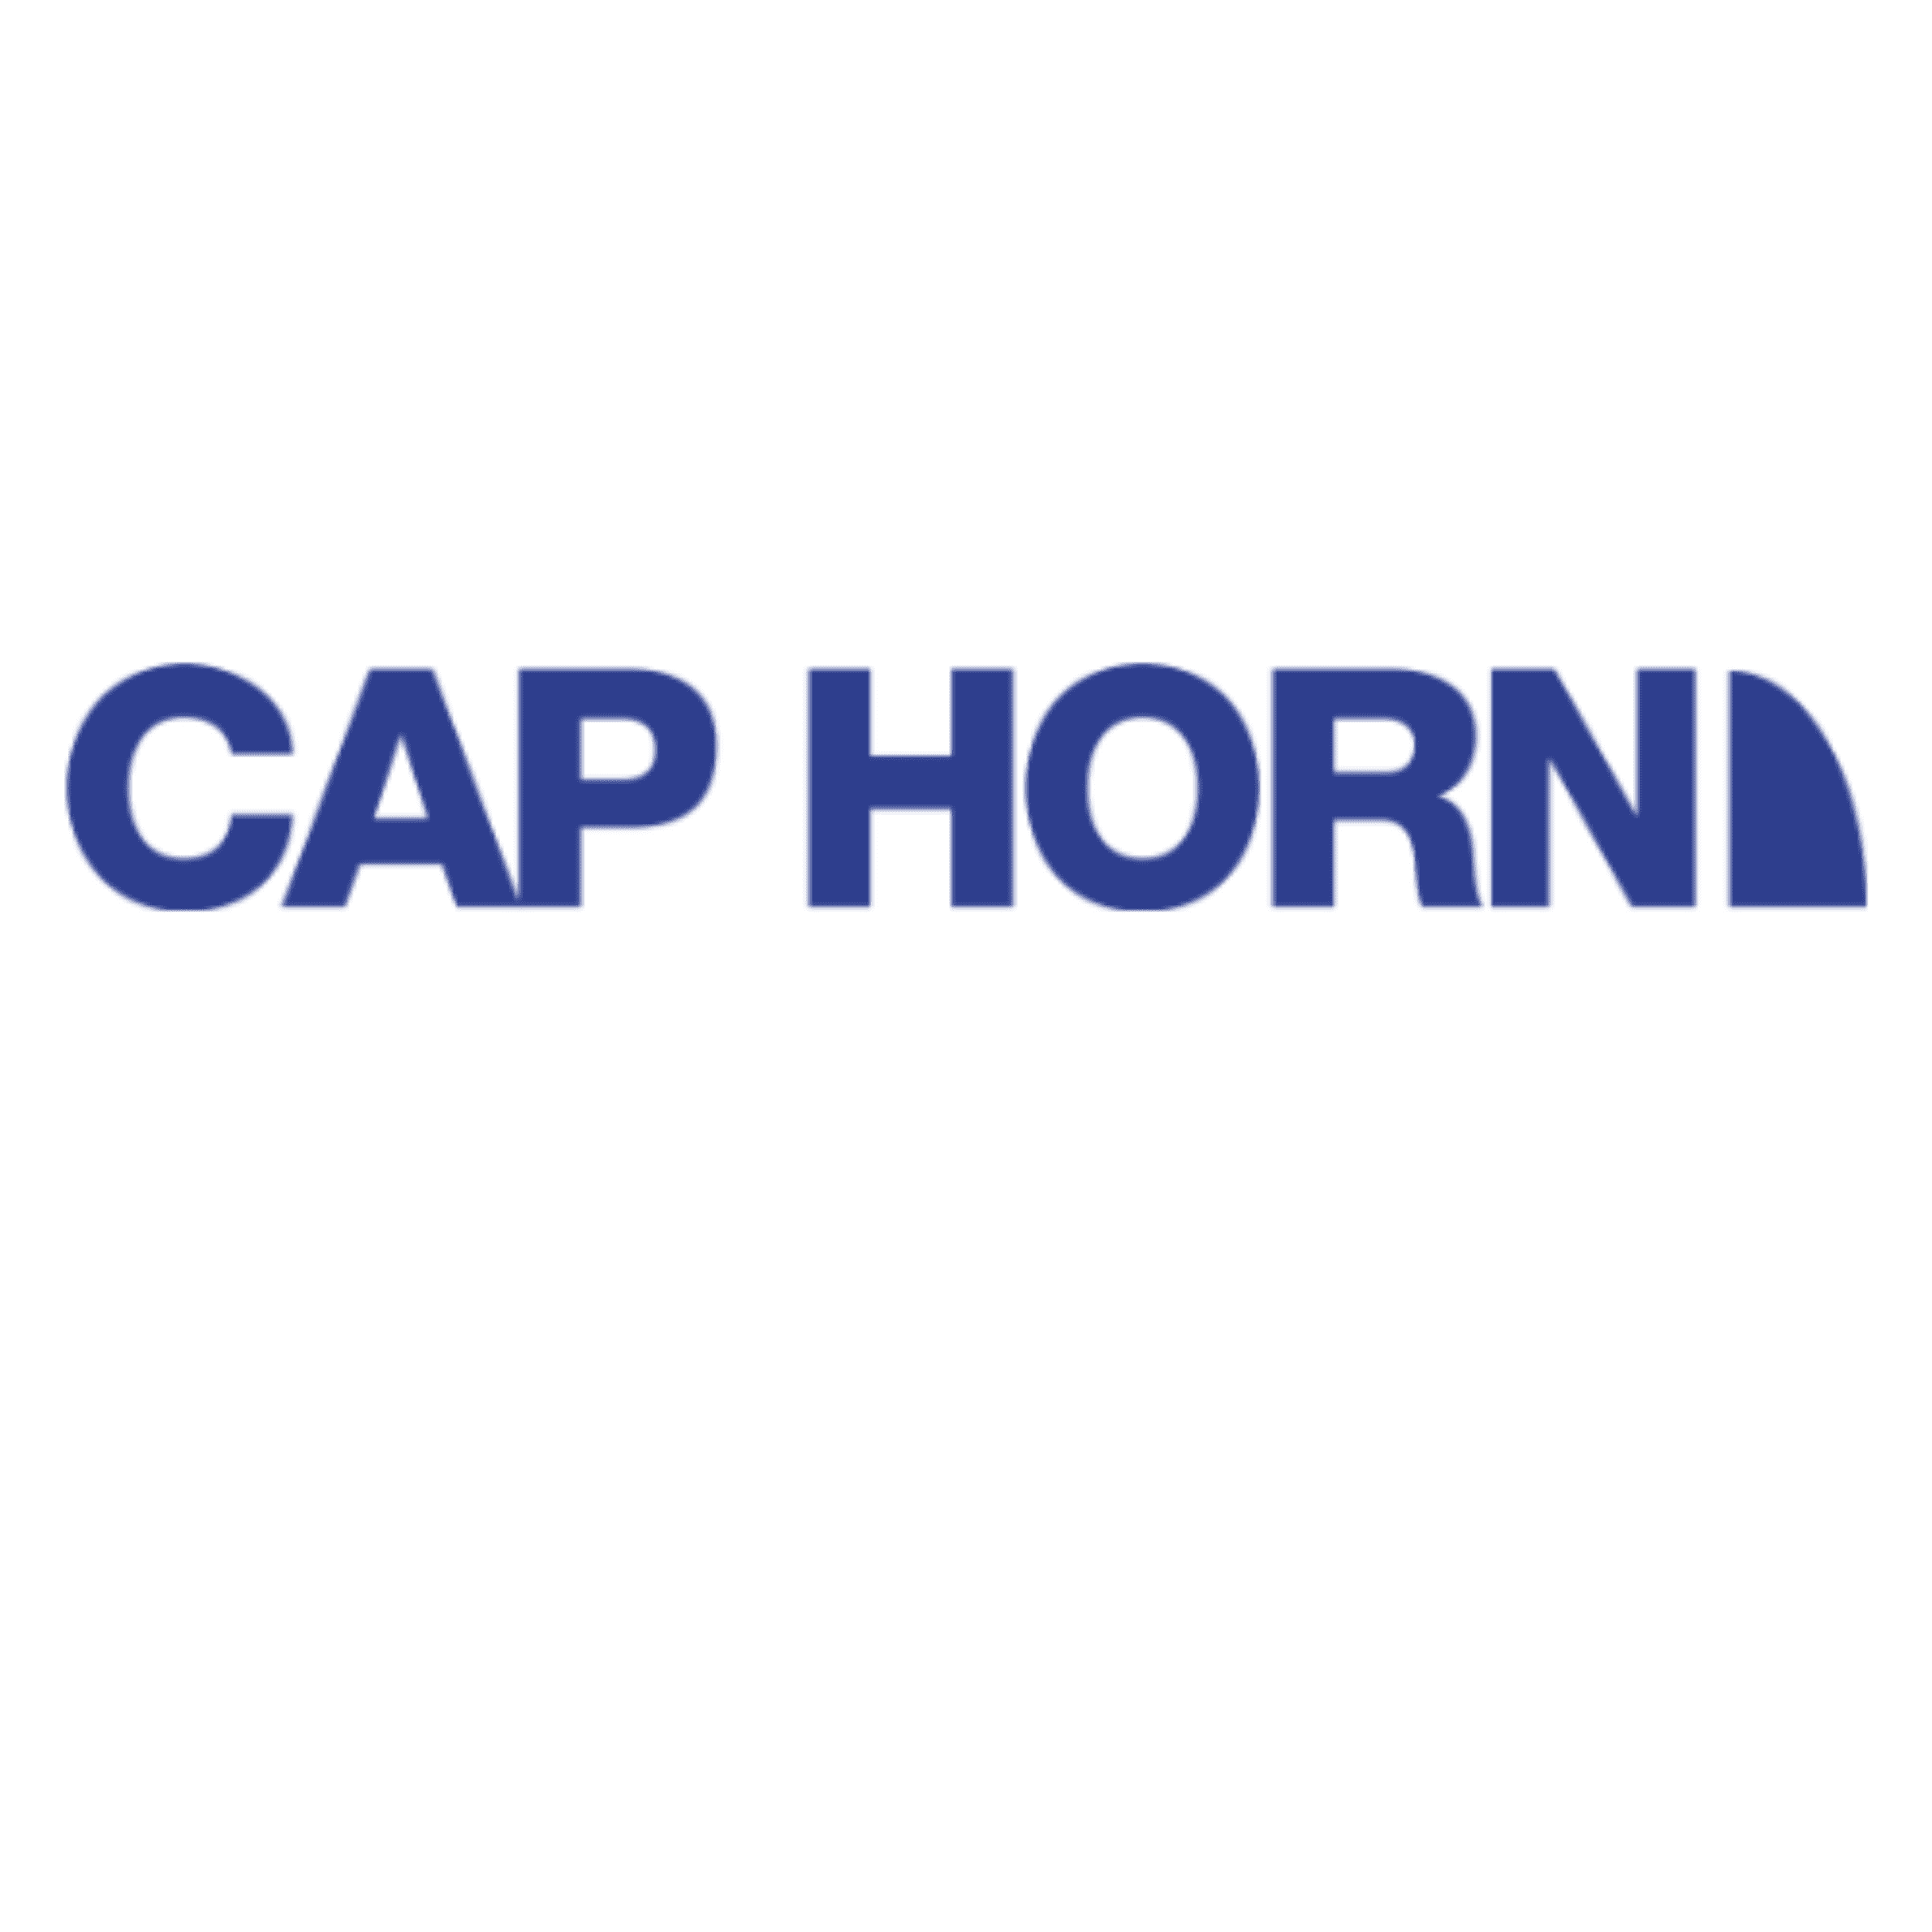 cap horn